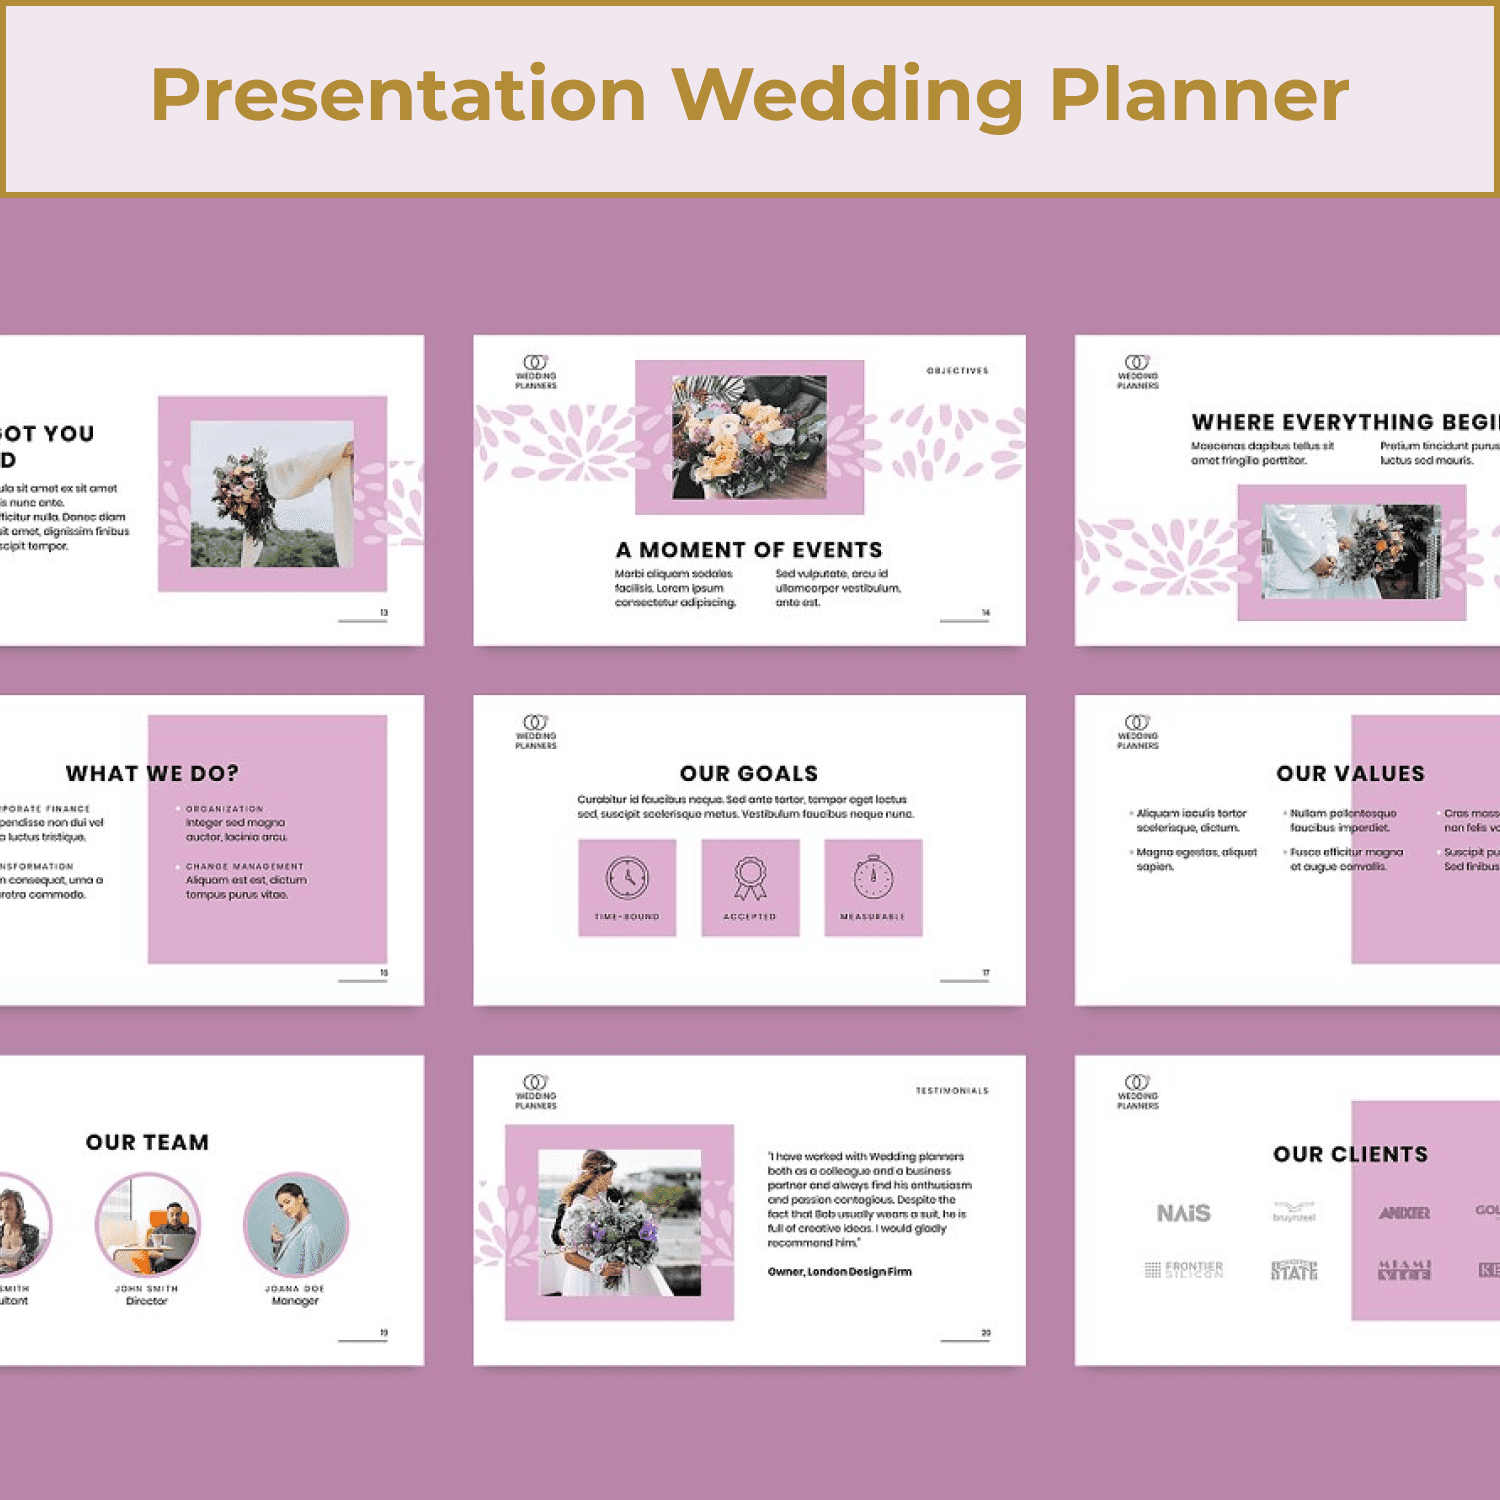 Presentation Wedding Planner.